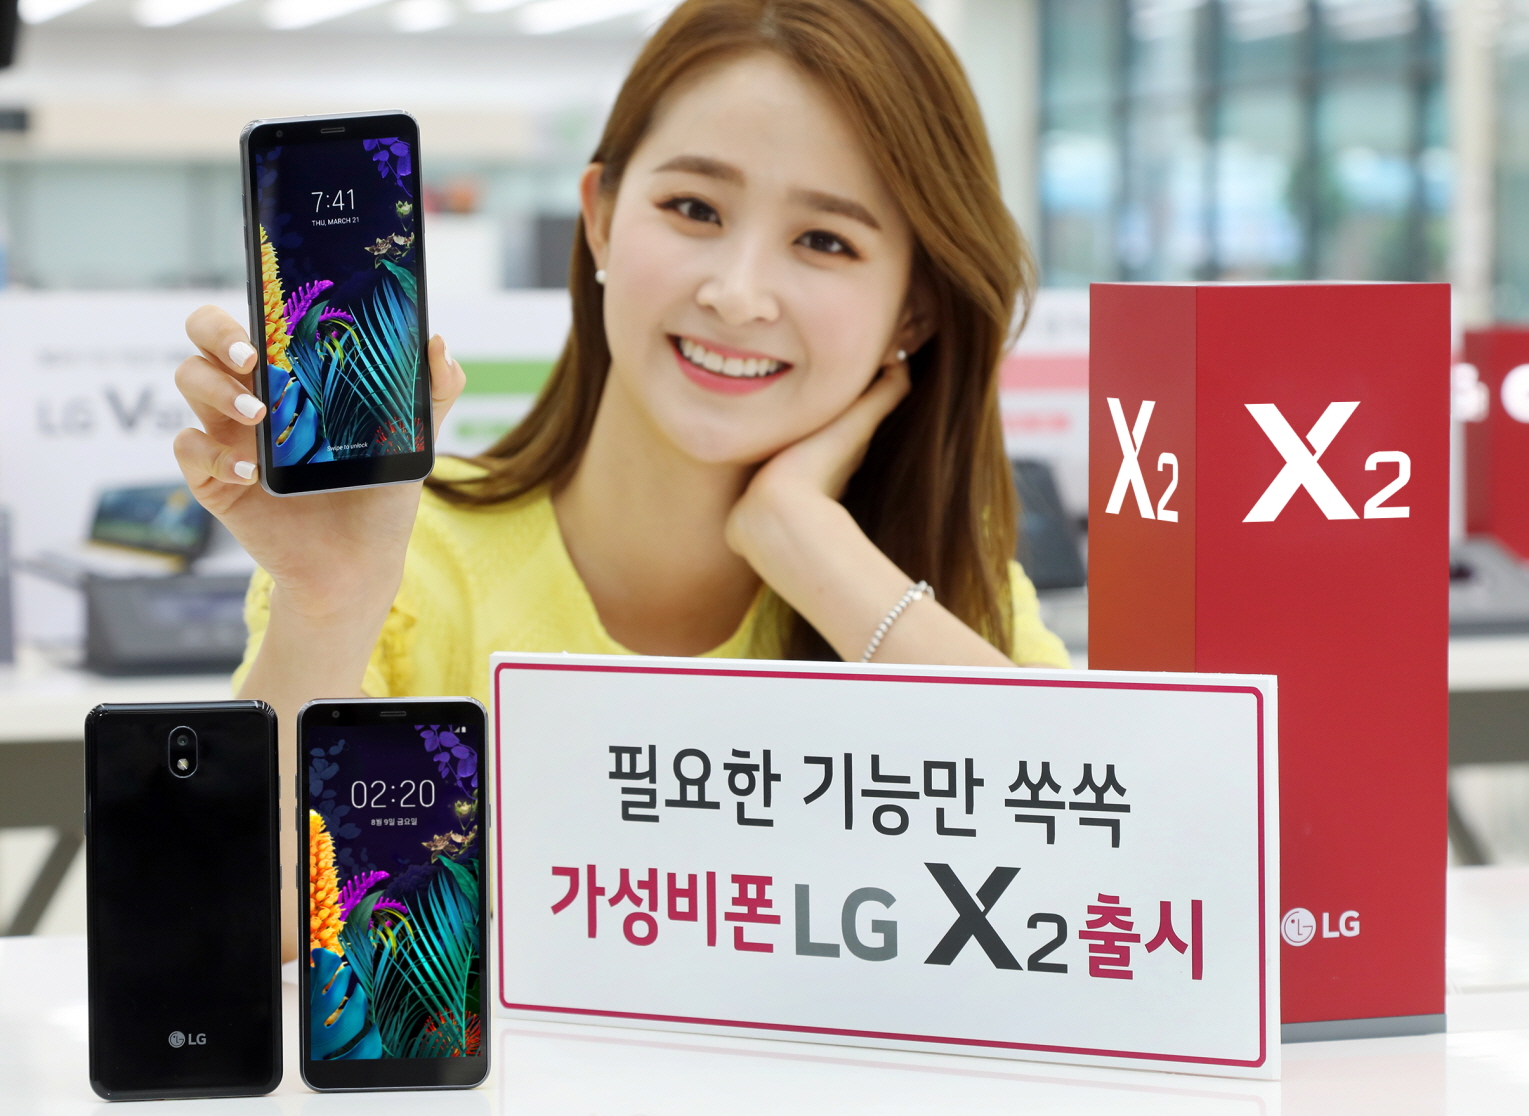 LG전자가 오는 9일 이통3사와 자급제 채널을 통해 실속형 스마트폰 LG X2를 국내 출시한다. 출고가는 19만 8천 원. LG전자 모델이 서울 영등포구 소재 LG베스트샵 양평점에 위치한 모바일 코너에서 LG X2를 소개하고 있다.